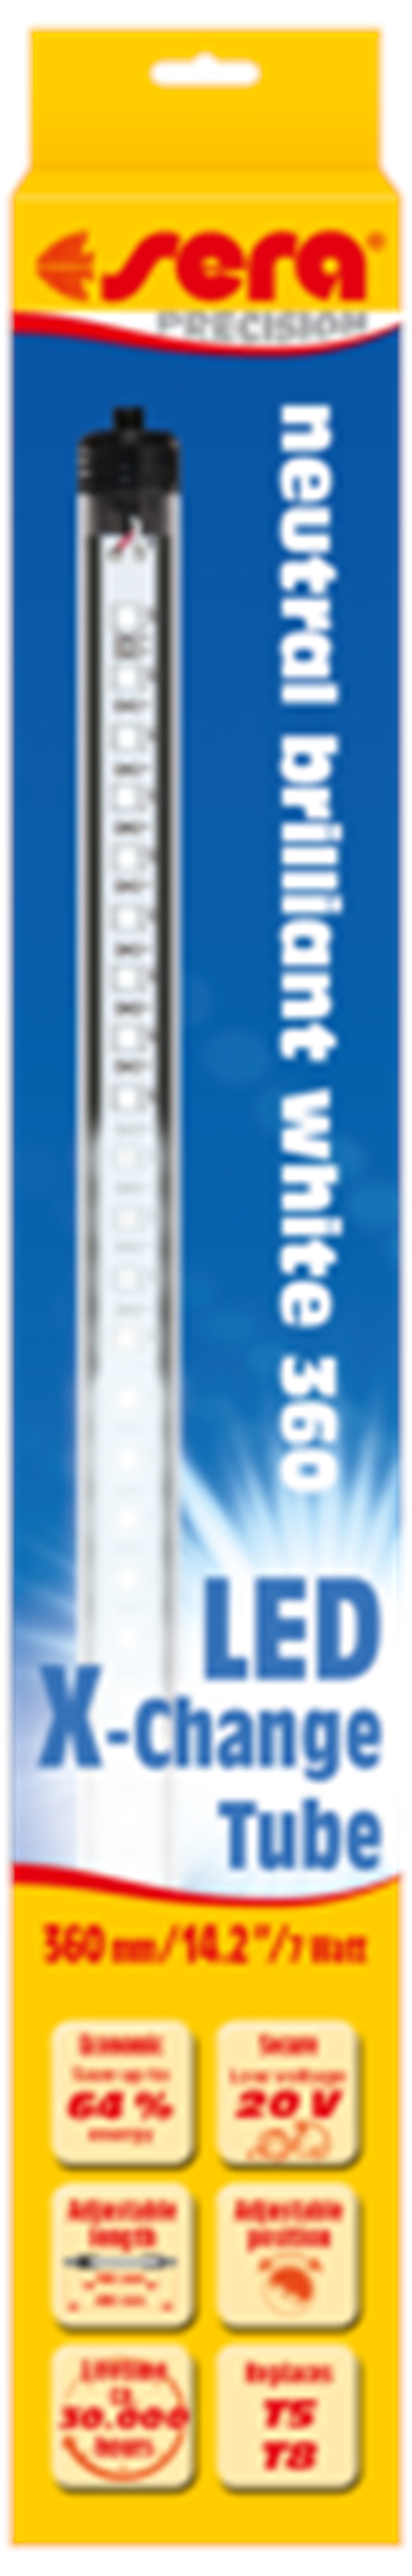 sera LED neutral brilliant white 1420 mm / 20 W